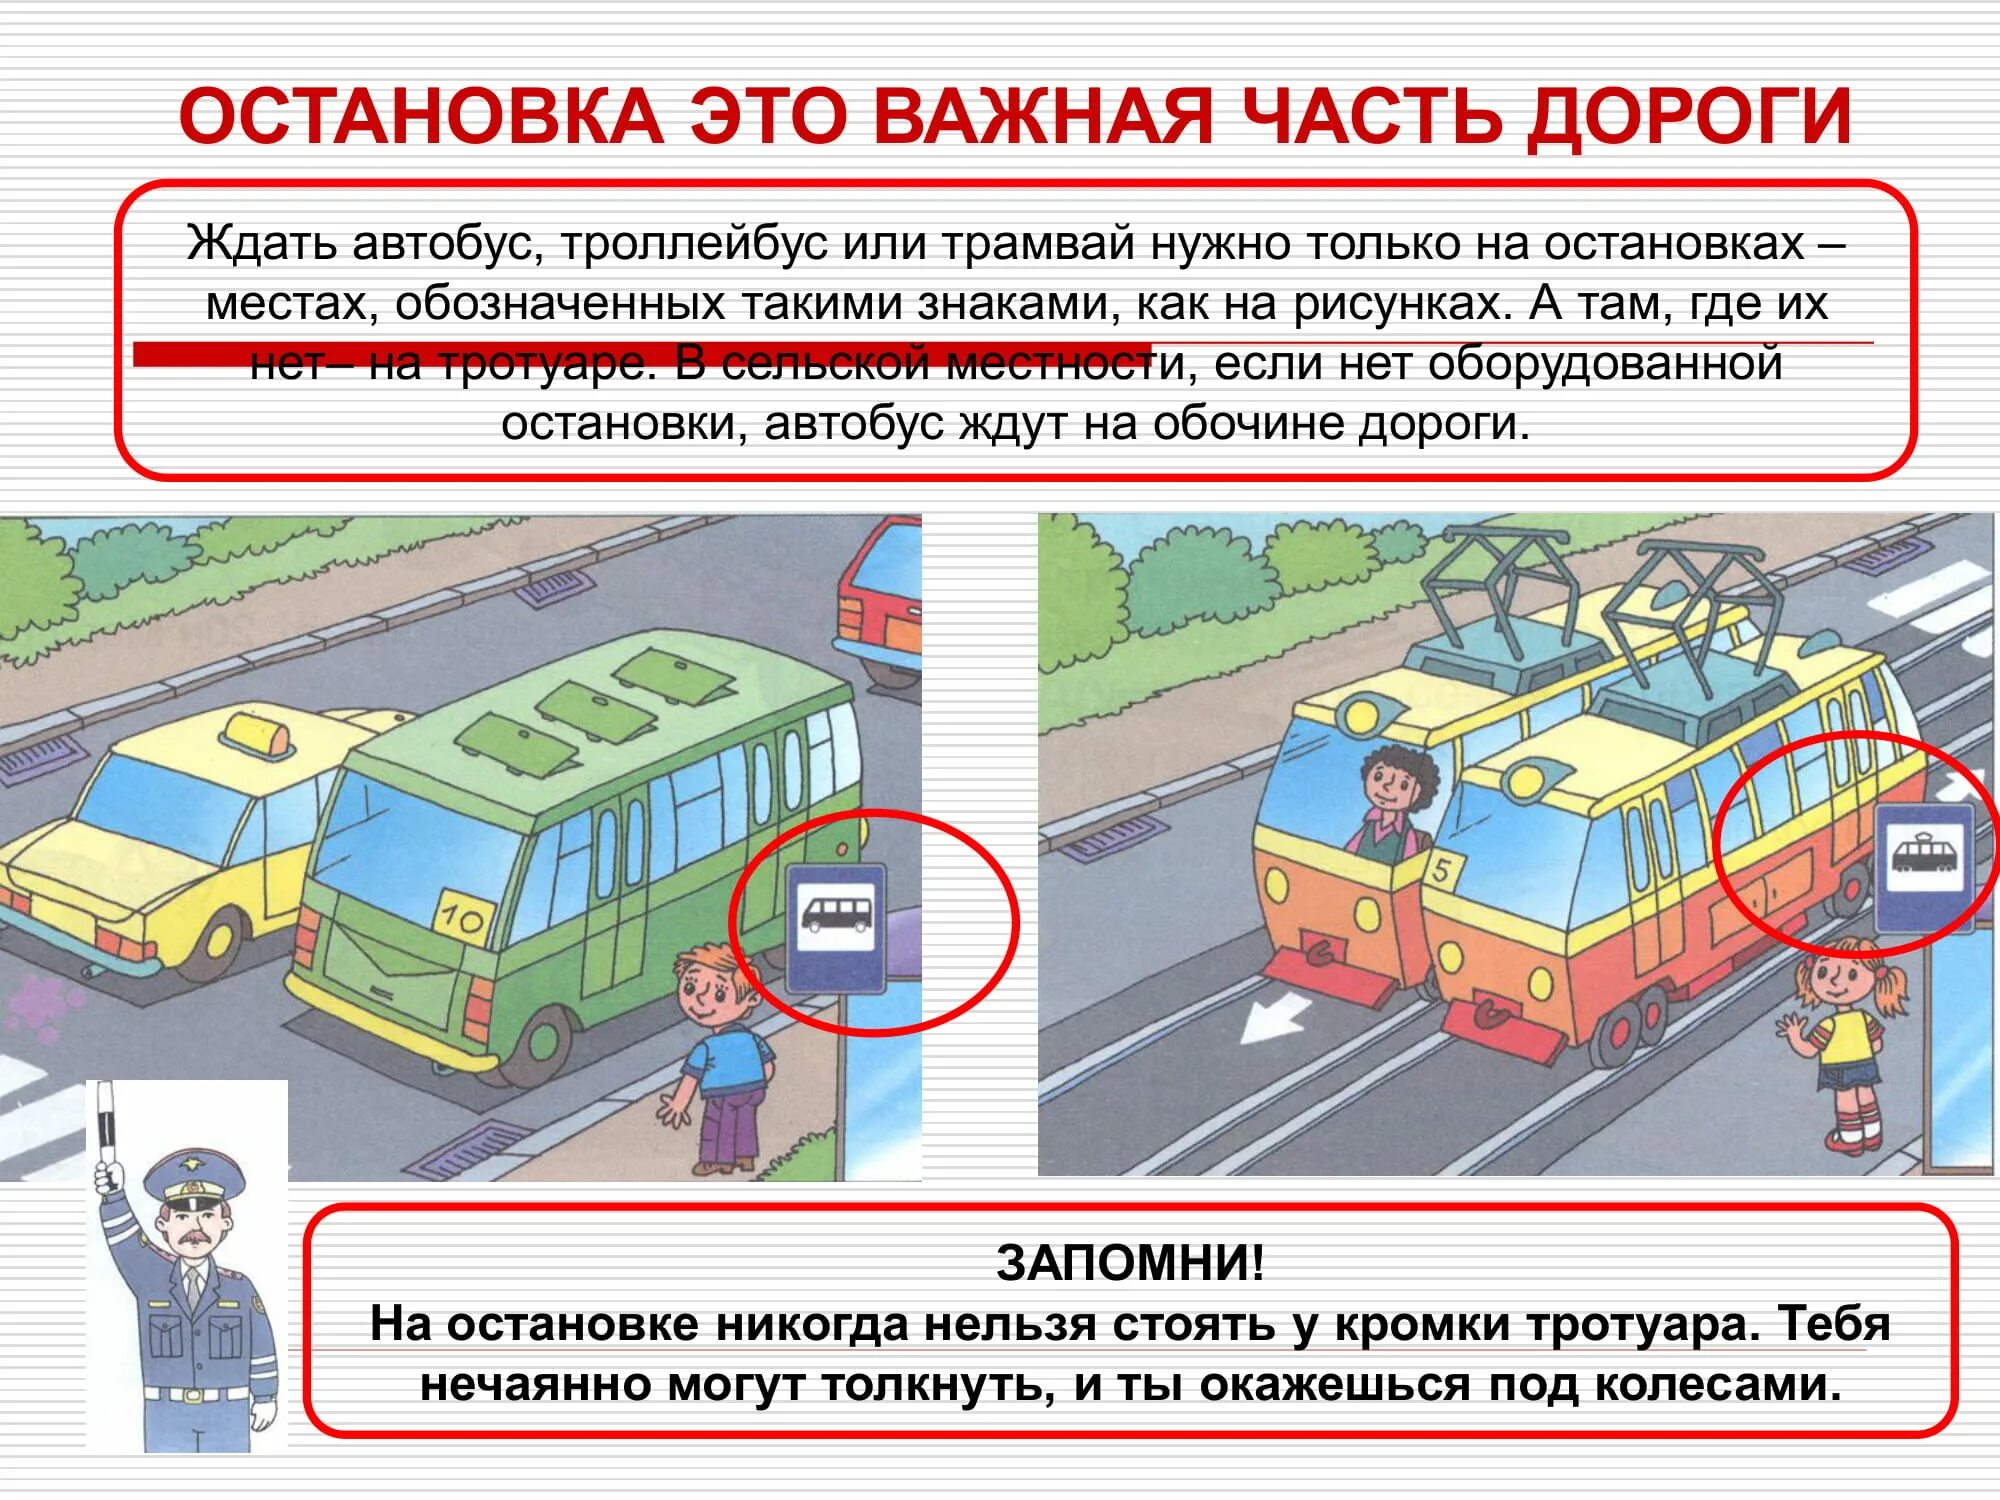 Автобус троллейбус трамвай маршрутные. Правила поведения пассажира на остановке. Правила поведения на автобусной остановке. Поведение на остановке общественного транспорта. Безопасность пассажиров в транспорте.